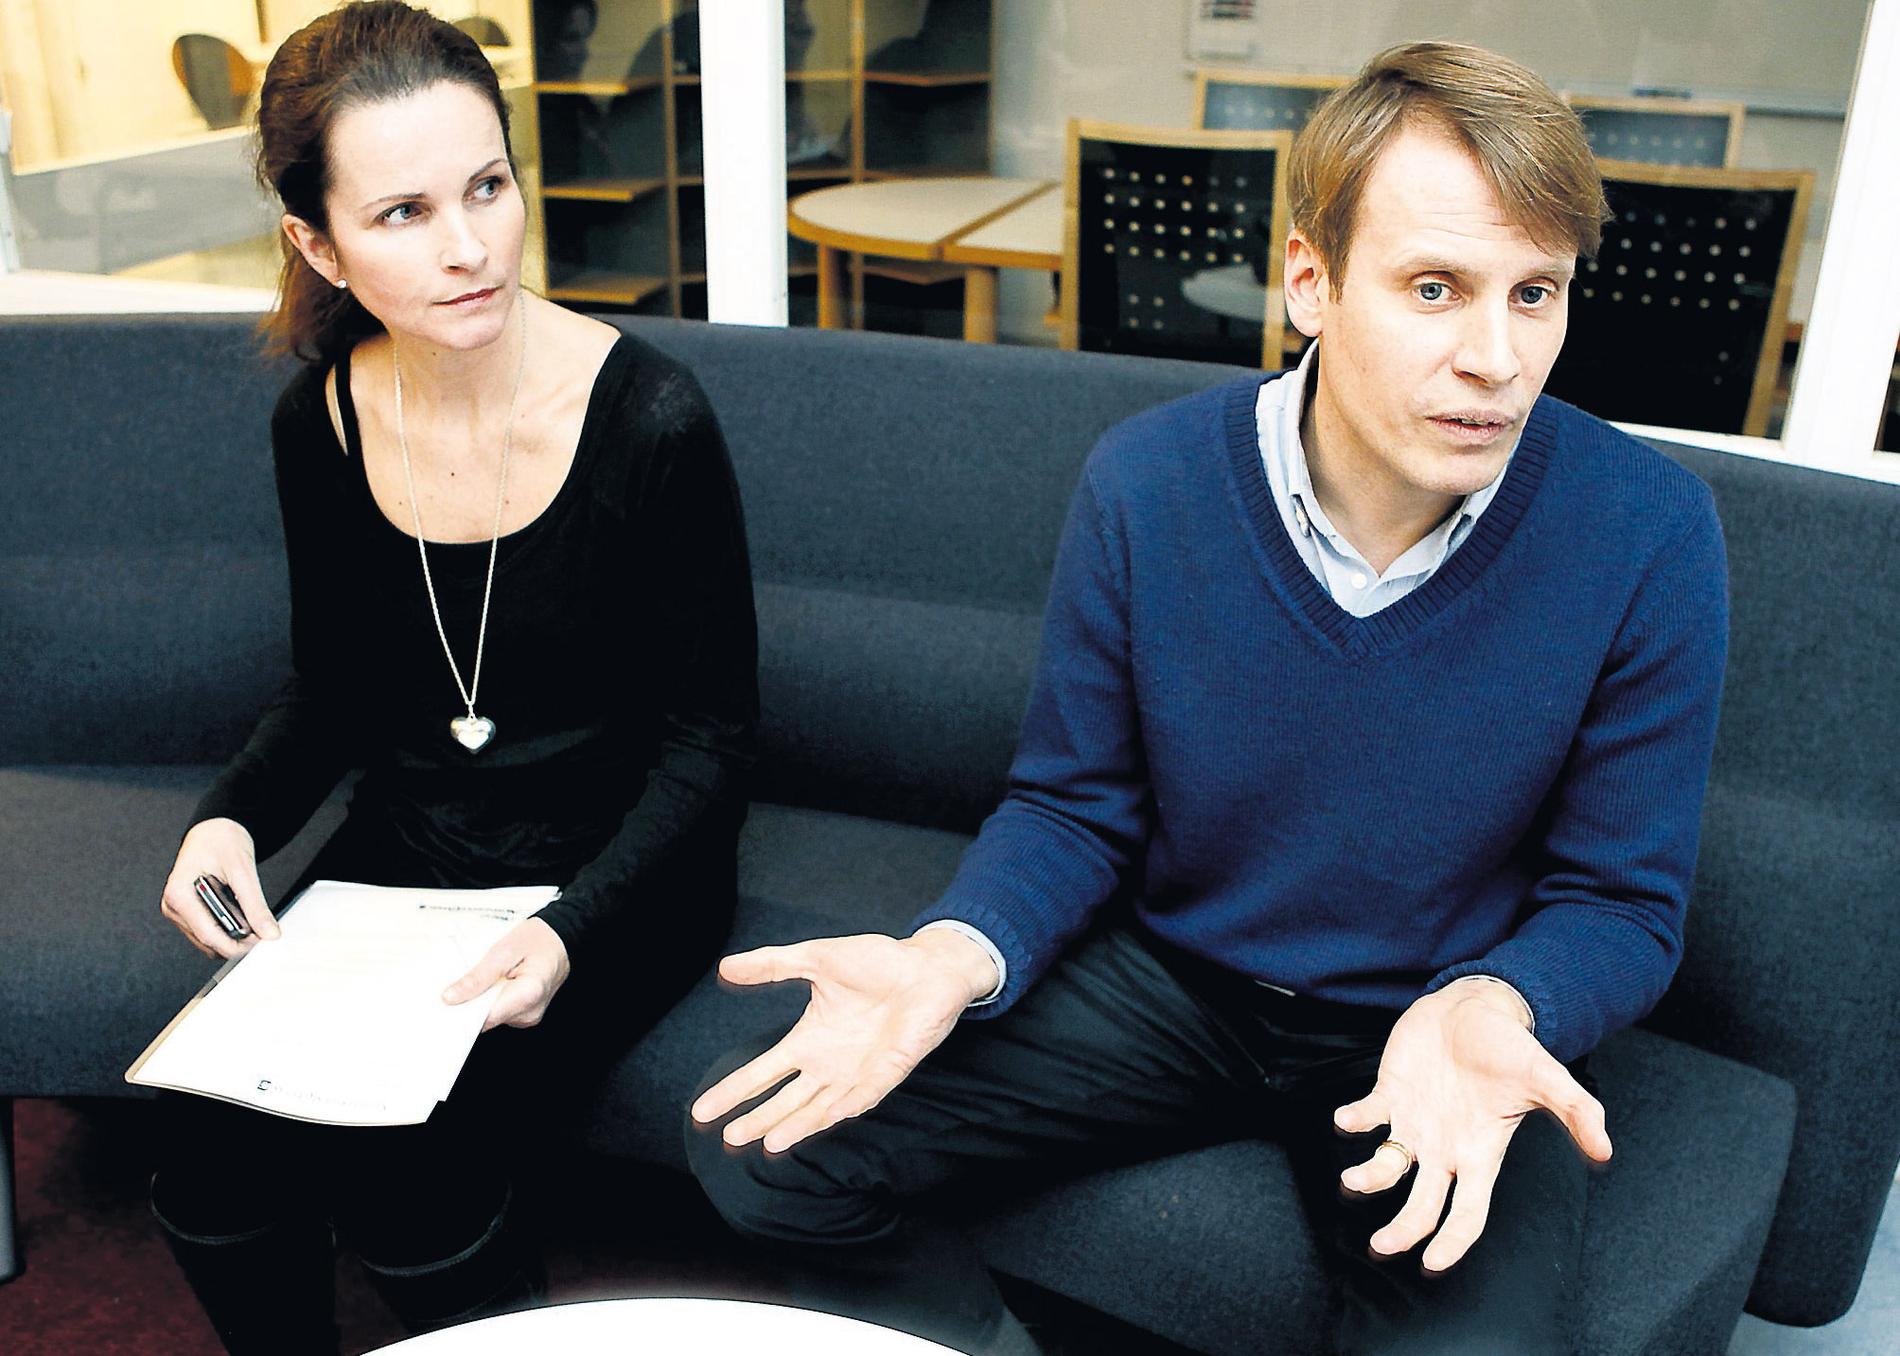 Ingegerd Tronde och Magnus Karlsson Lamm på TV4 bemöter anklagelserna. ”Vi ser på röstningsförfarandet på det mest seriösa sätt”, säger han.